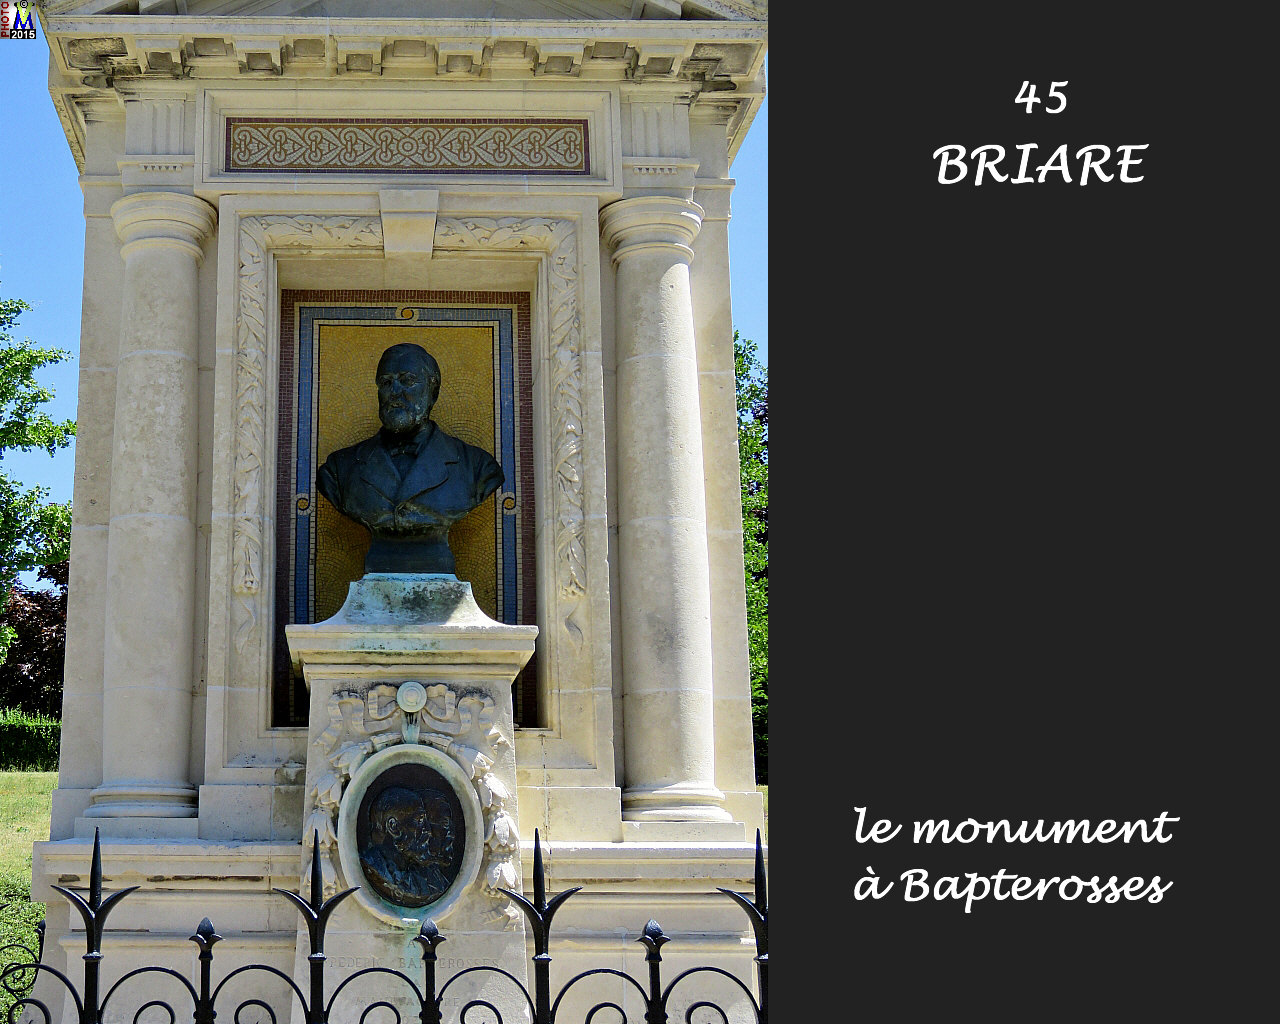 45BRIARE_monumentBapterosses_102.jpg